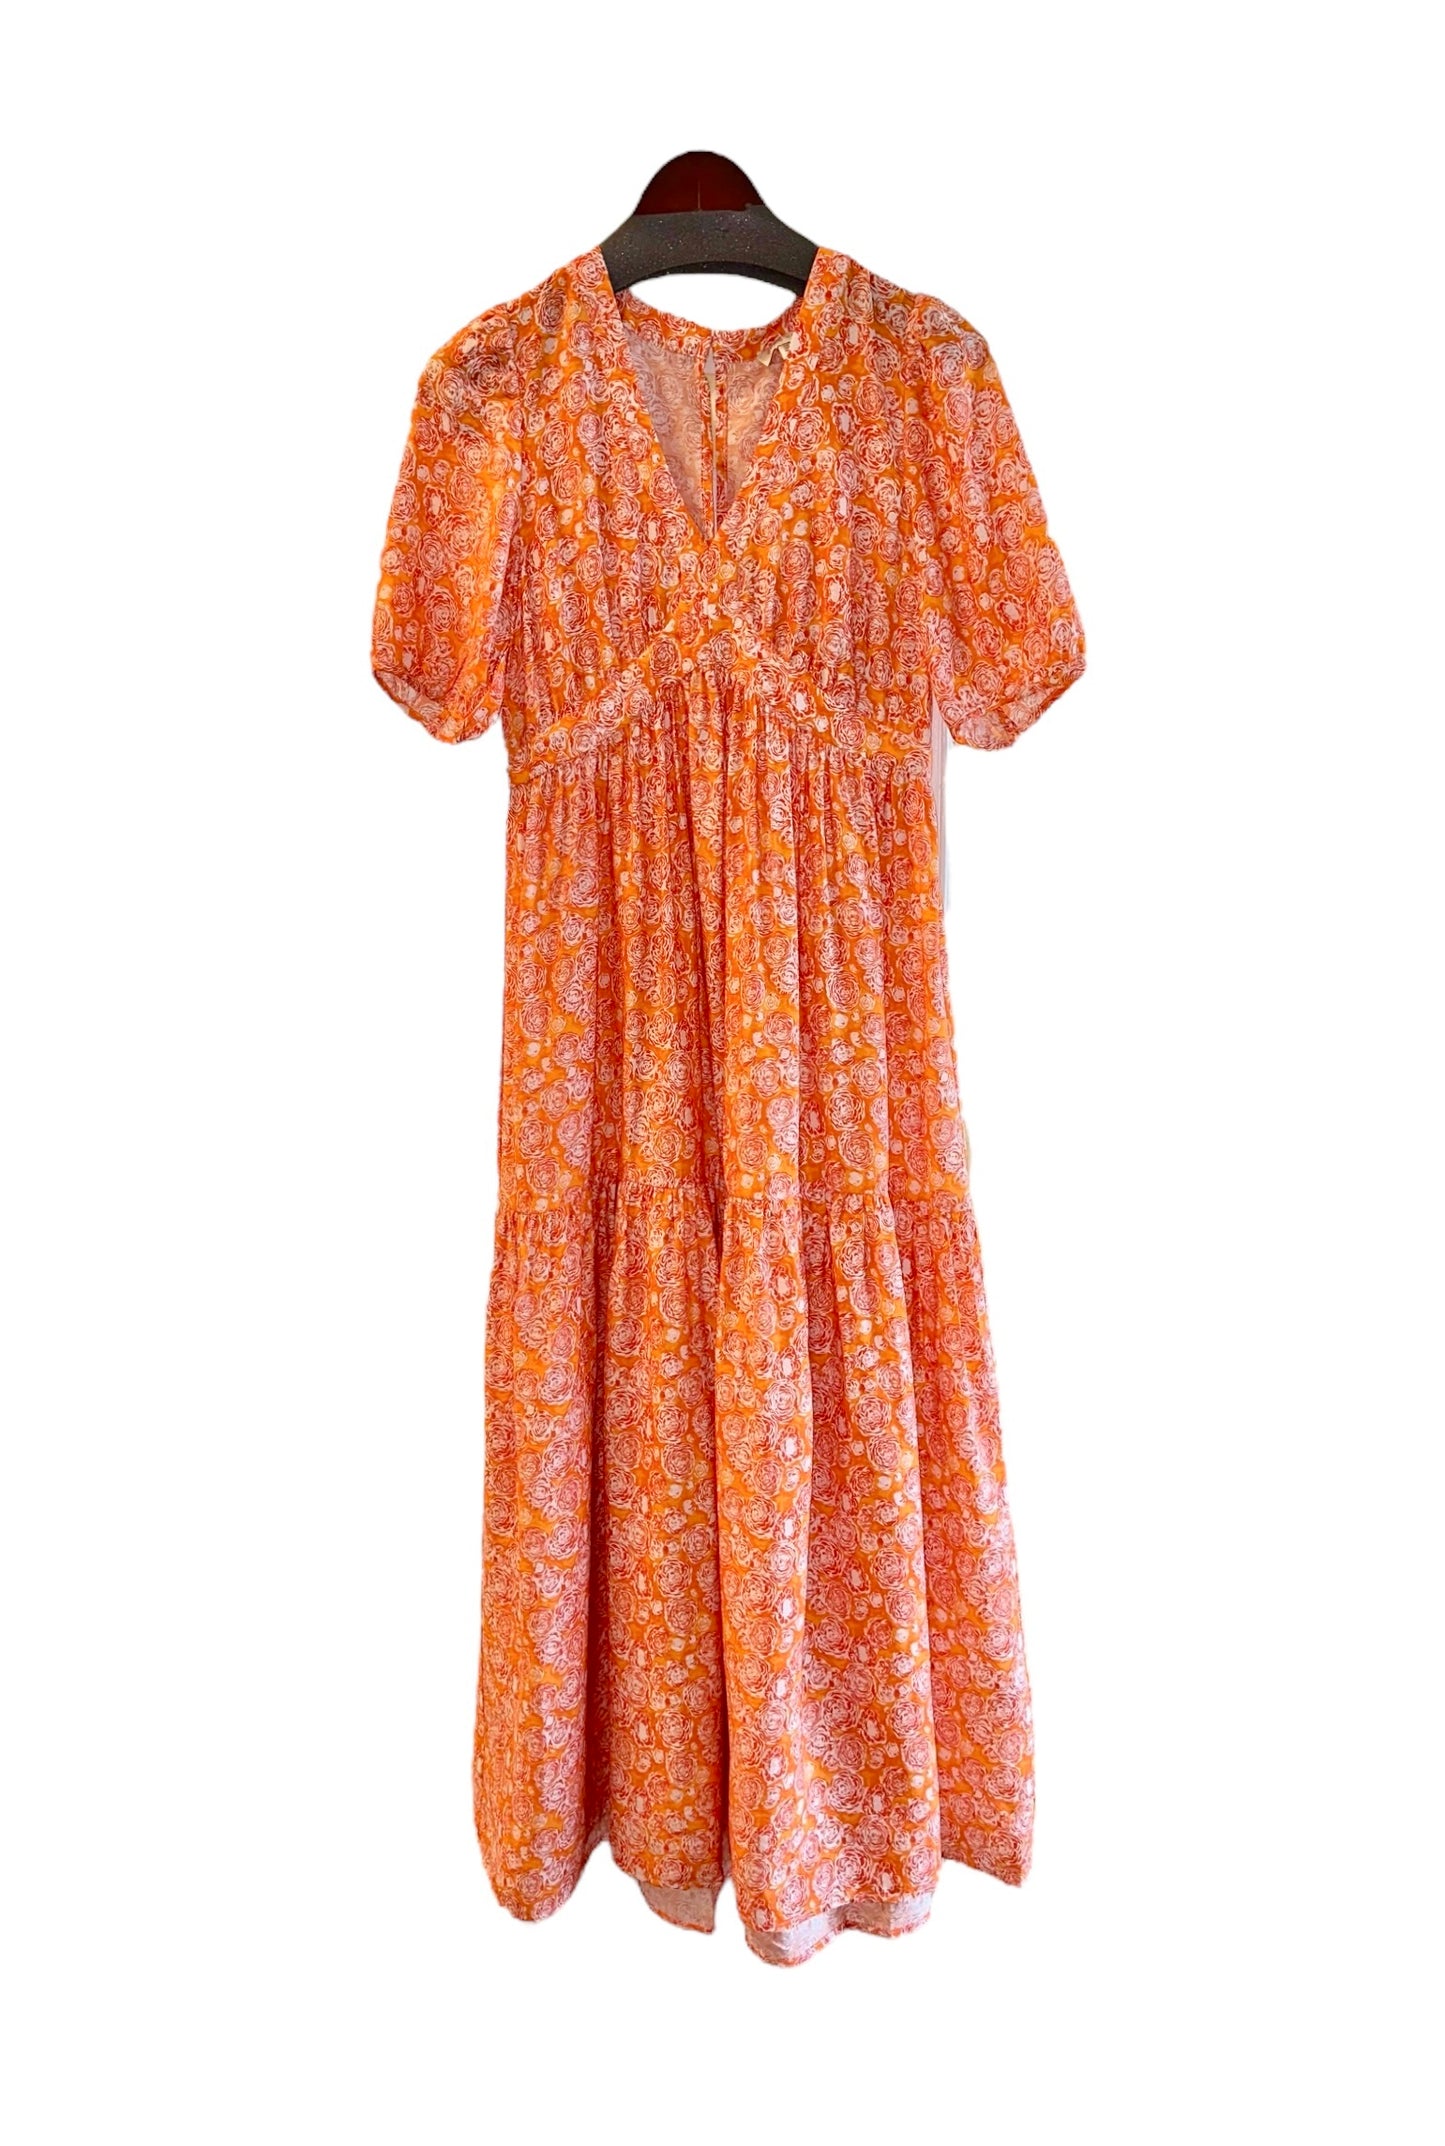 Printed Maxi Dress in orange by See U Soon